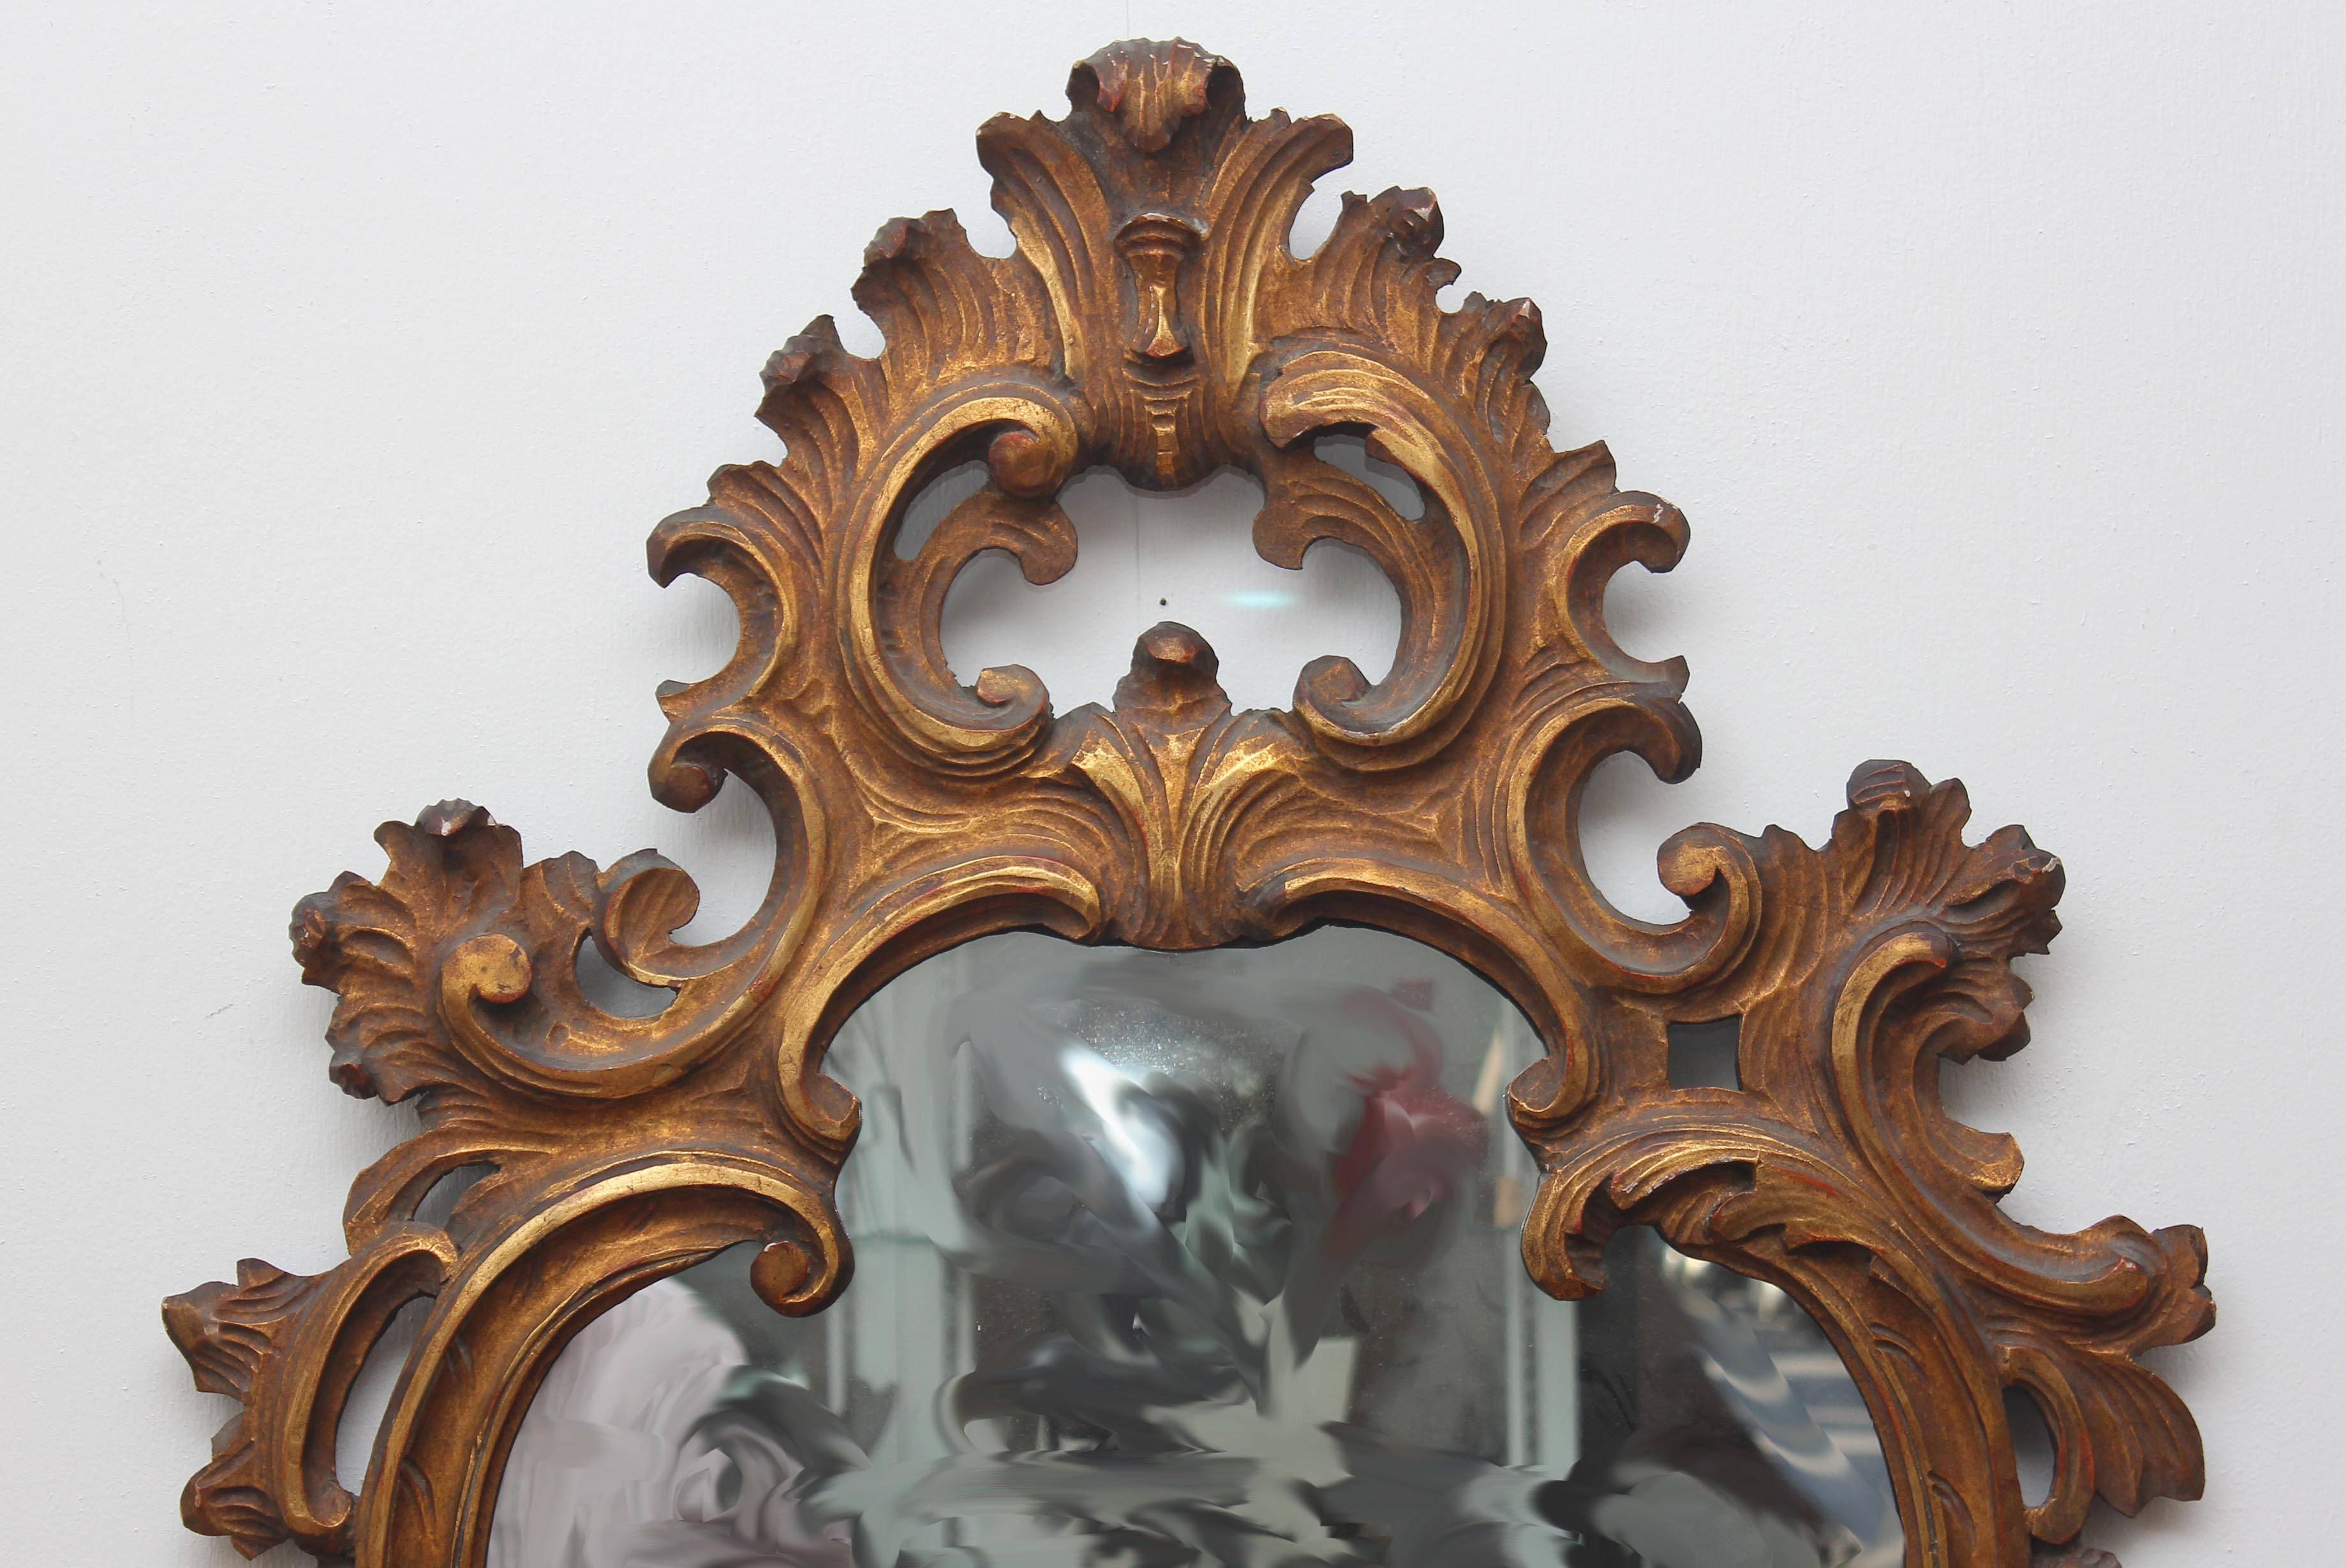 Großer geschnitzter Spiegel aus vergoldetem Holz im venezianischen Barockstil. Ausgezeichnete Qualität. Siehe unsere anderen Spiegel. Bitte kontaktieren Sie uns für Versandoptionen.
Präsentiert von Joseph Dasta Antiques